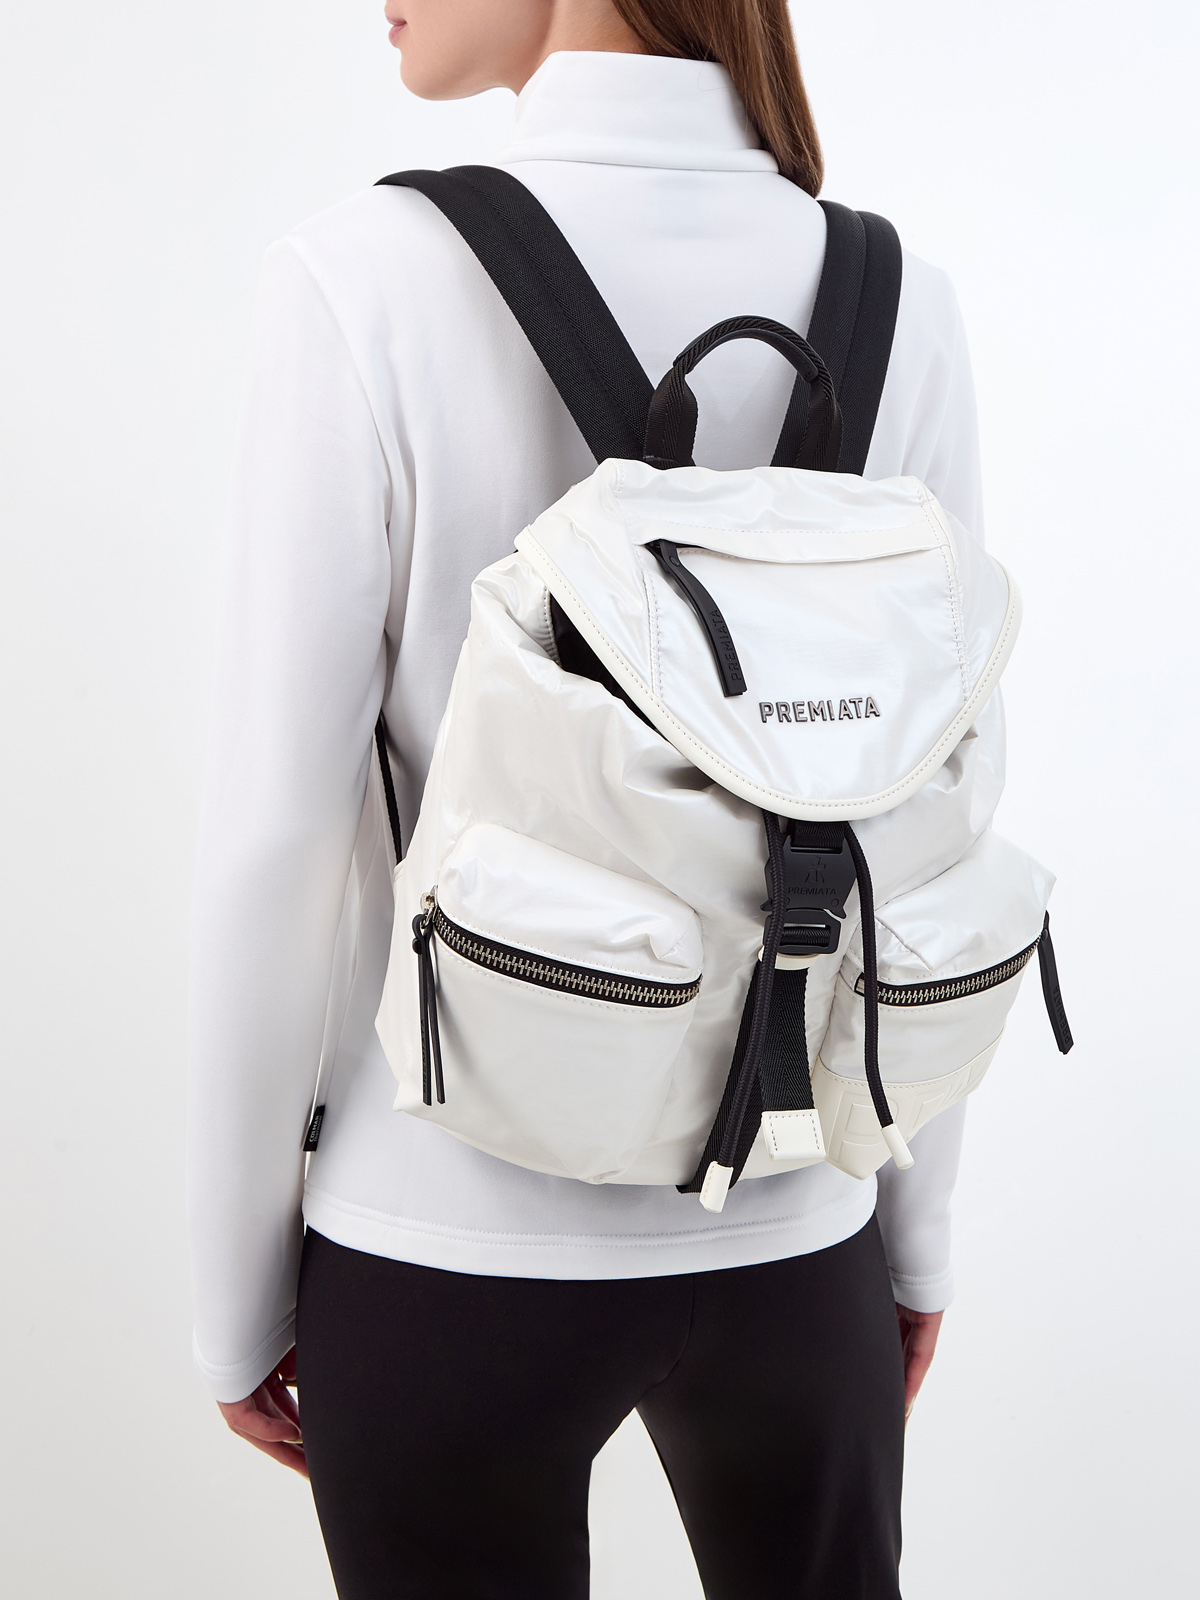 Функциональный рюкзак Lyn с кожаной отделкой и съемным ремнем PREMIATA, цвет белый, размер S;M - фото 2